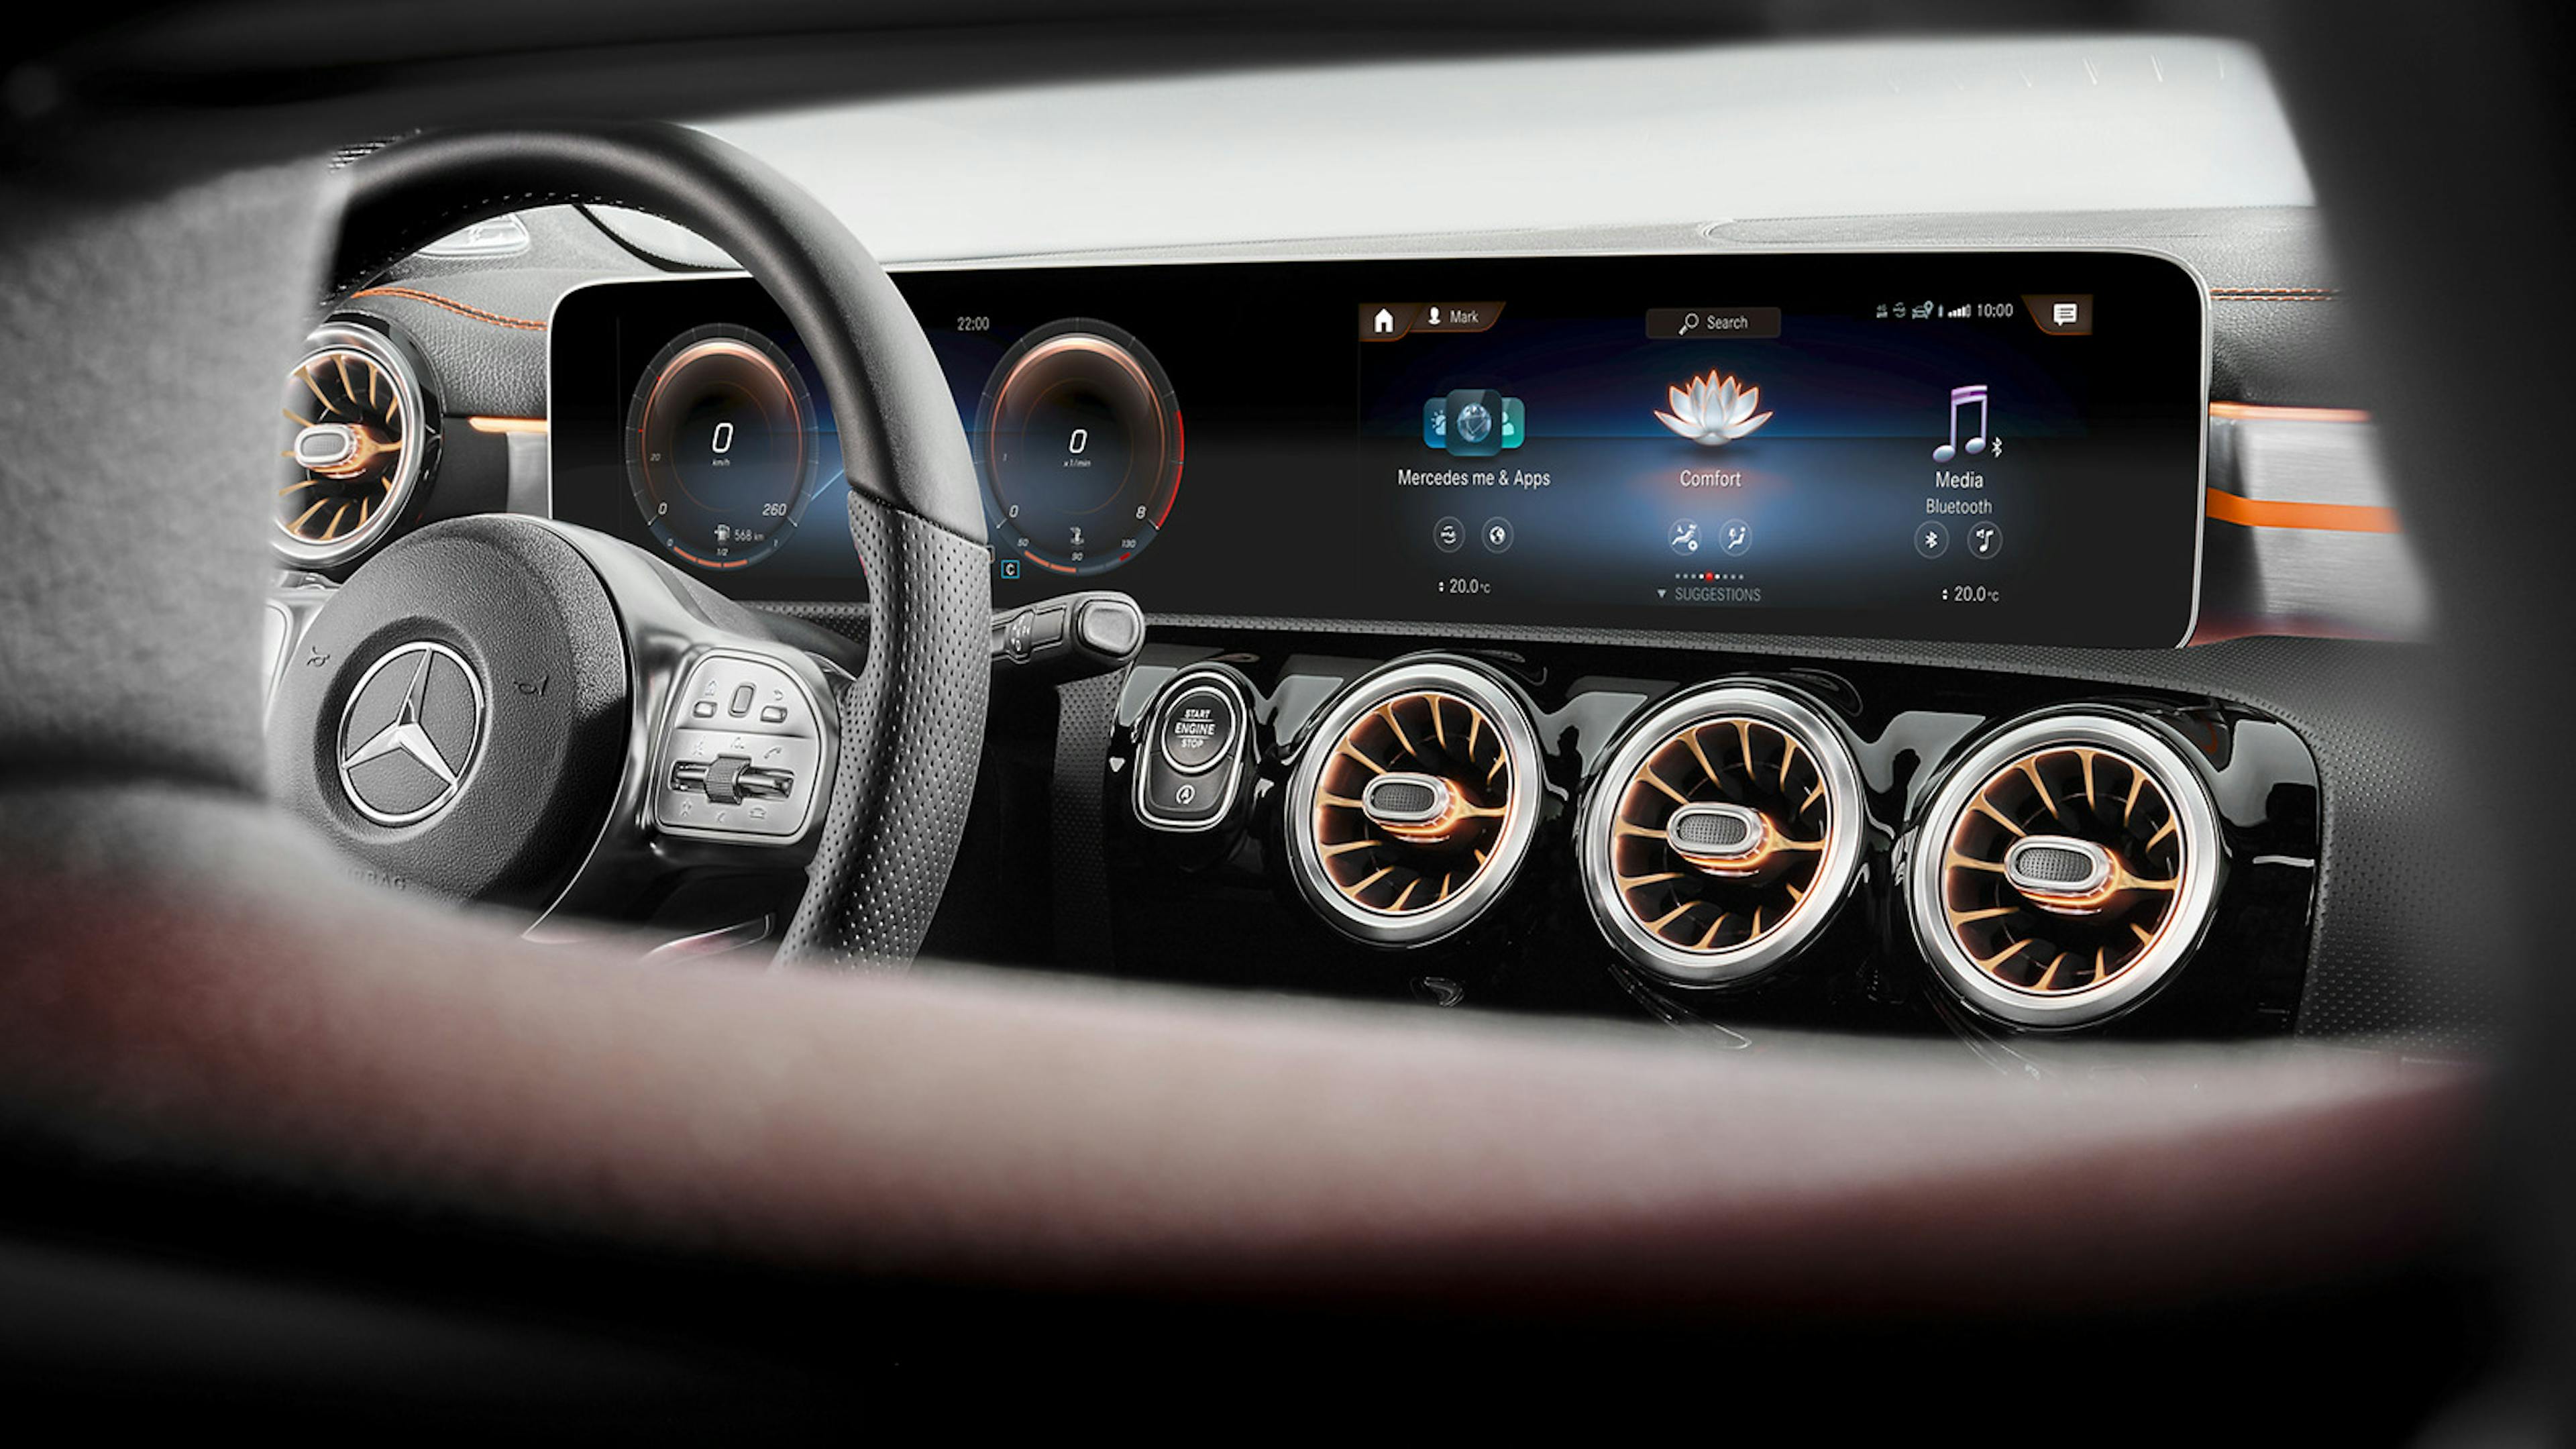 Das Widescreen-Display des Mercedes CLA verfügt über diverse digitale Funktionen